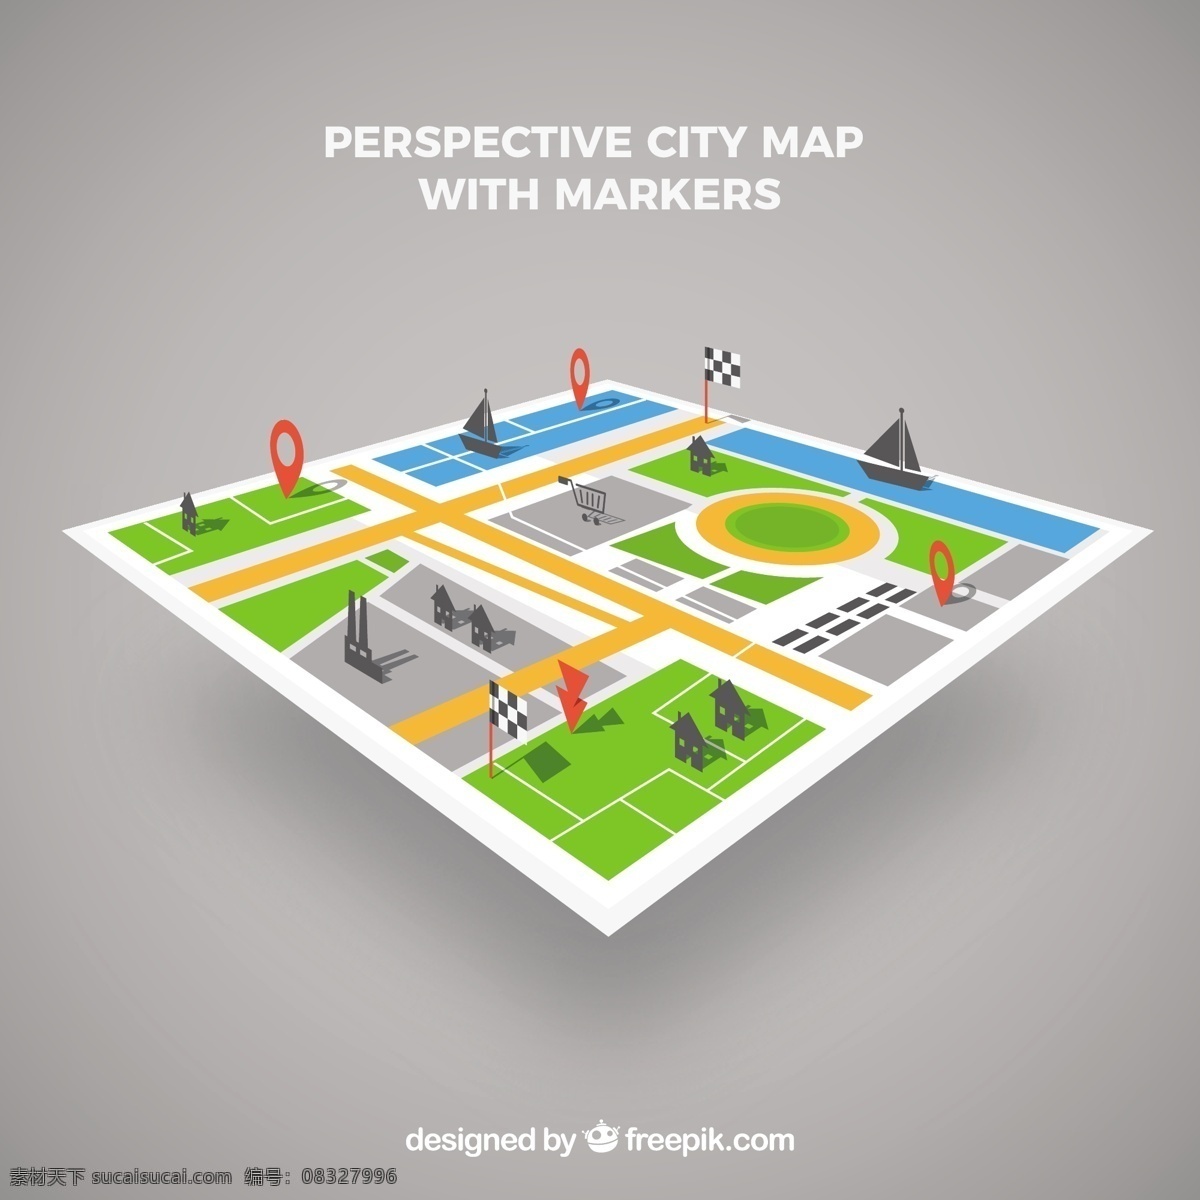 标注 图标 城市地图 矢量 有标注图标的 矢量素材